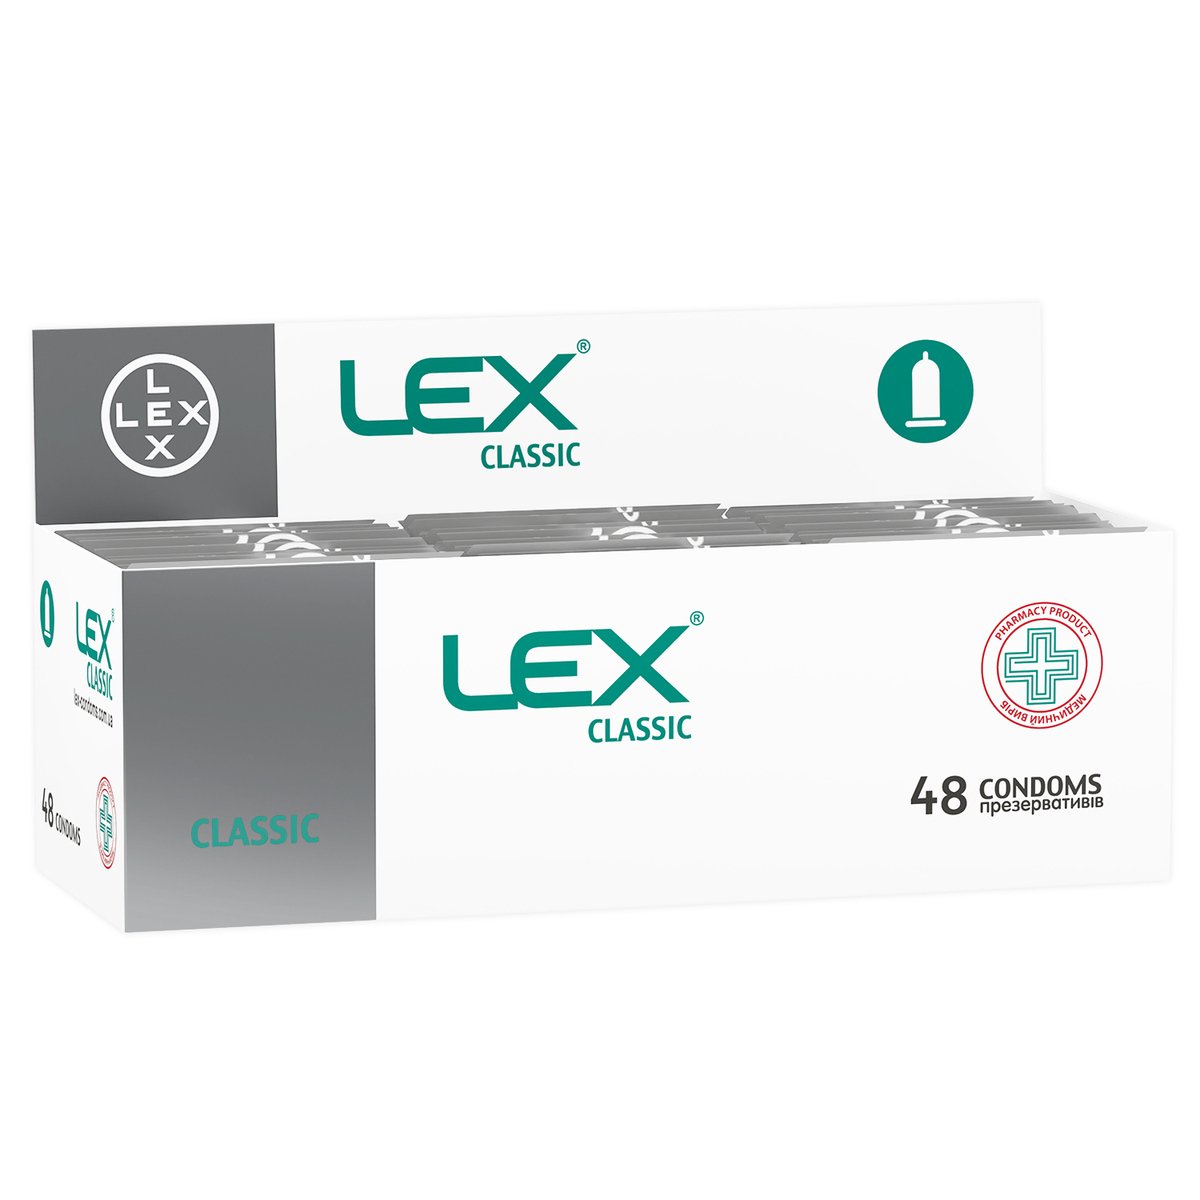 Презервативи Lex Classic класичні, 48 шт. (LEX/Classic/48) - фото 1